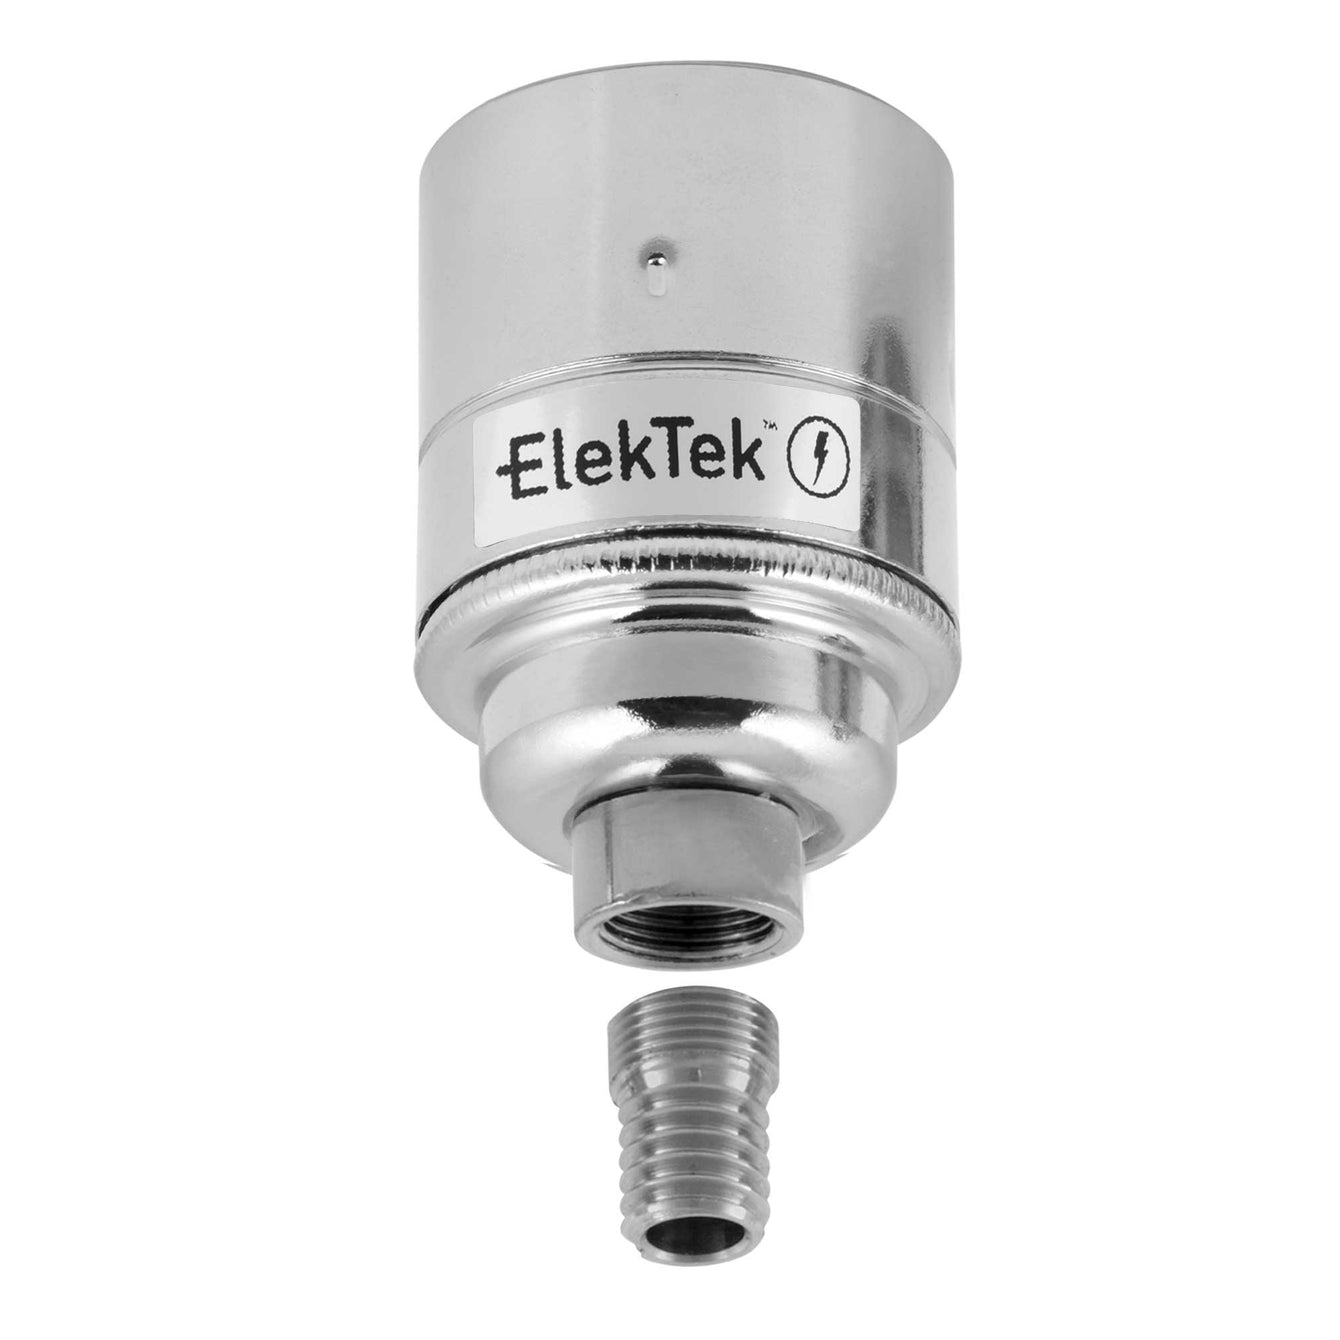 ElekTek ES Edison Screw E27 Lamp Holder Plain Skirt With Wood Mount Brass Chrome